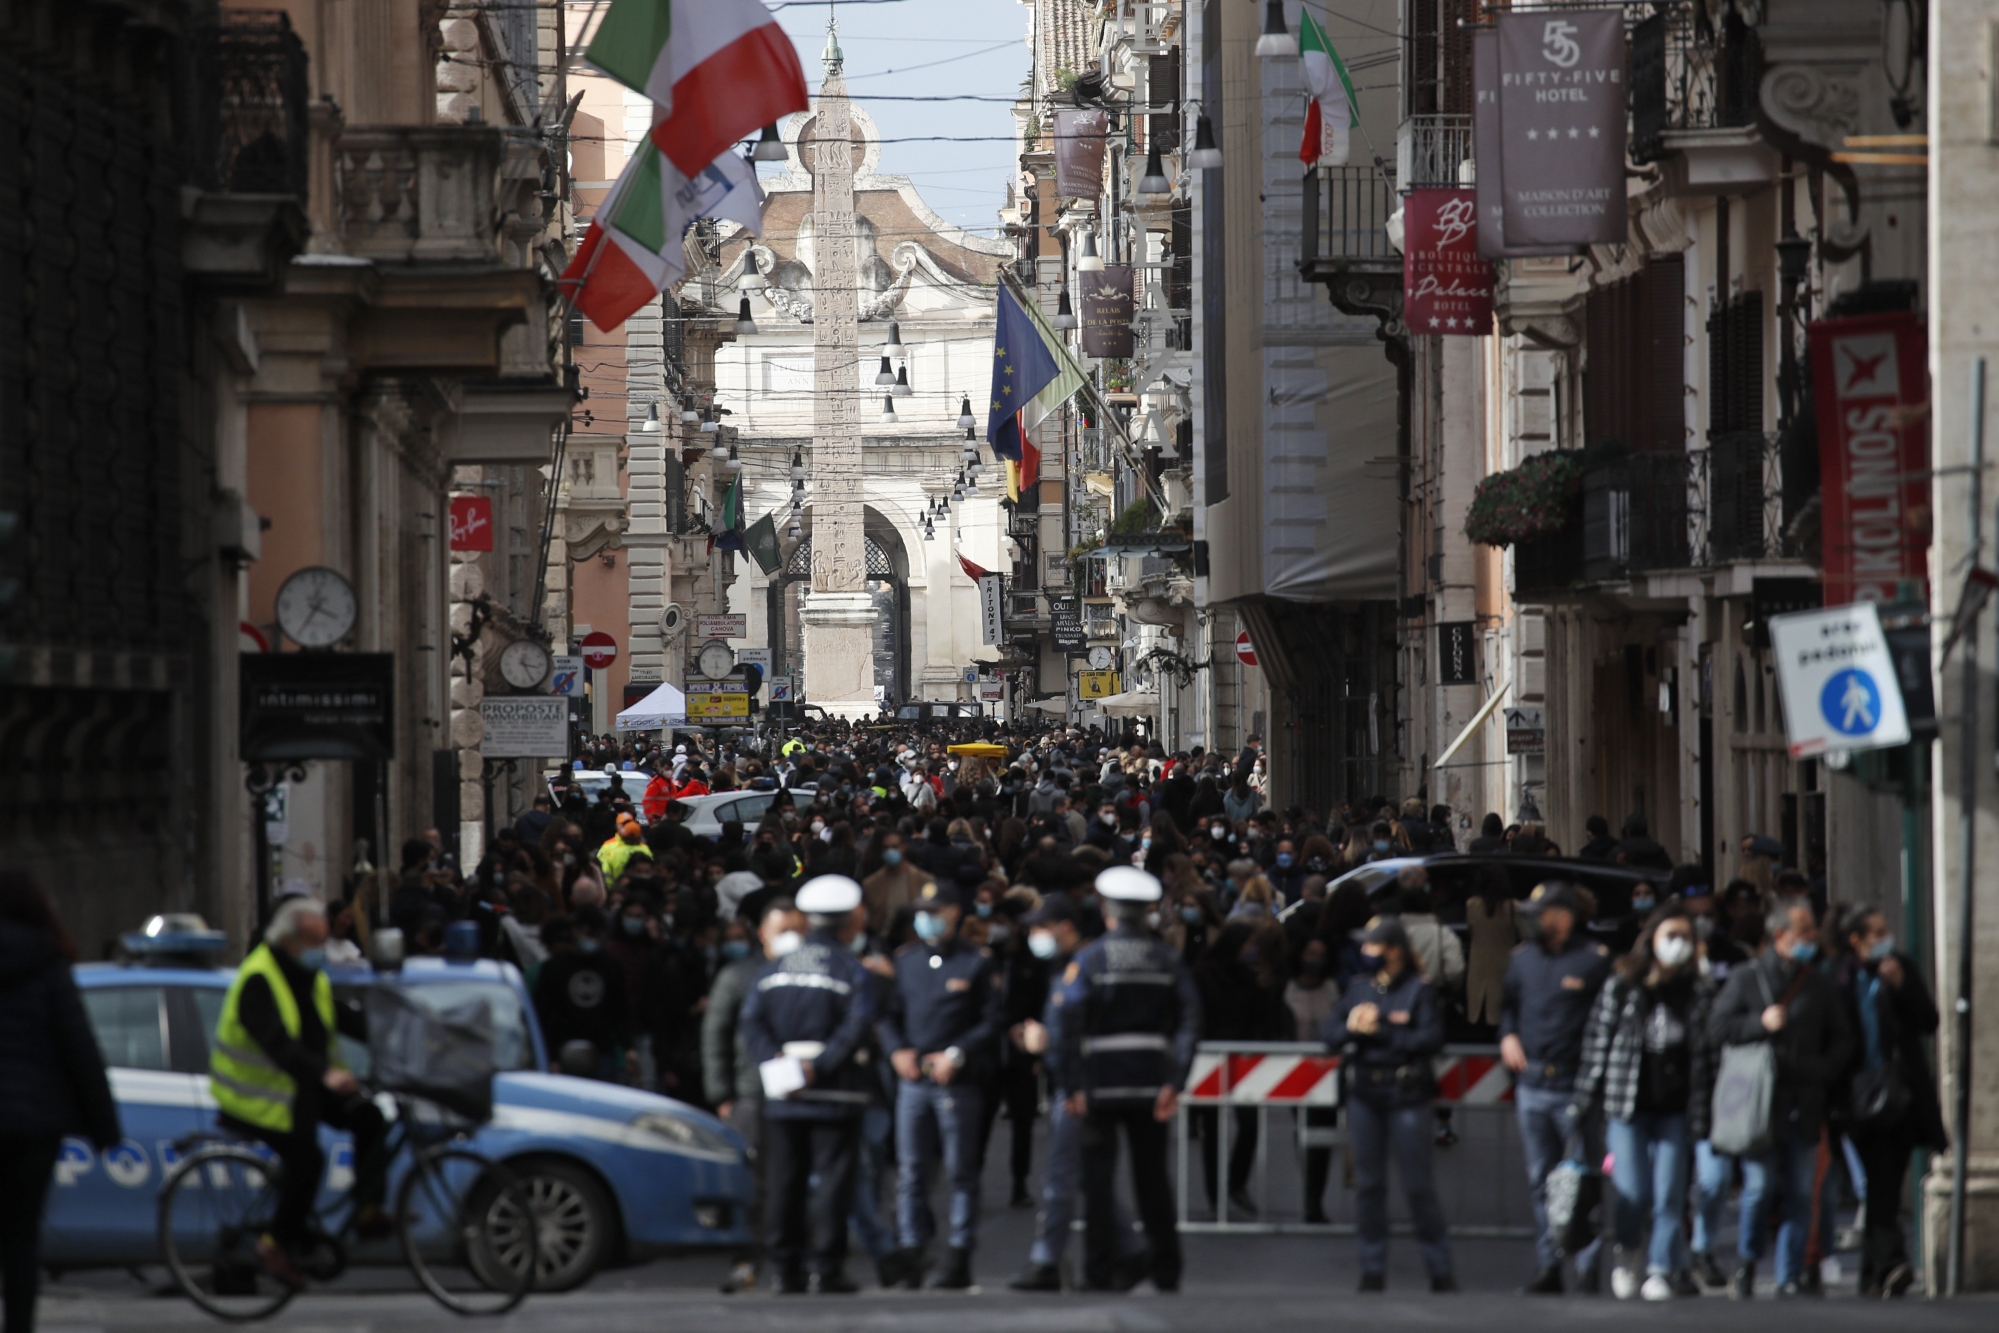 Dimanche, la foule avait envahi la Via del Corso à Rome, dernier jour de shopping et de relative liberté avant ce nouveau confinement.